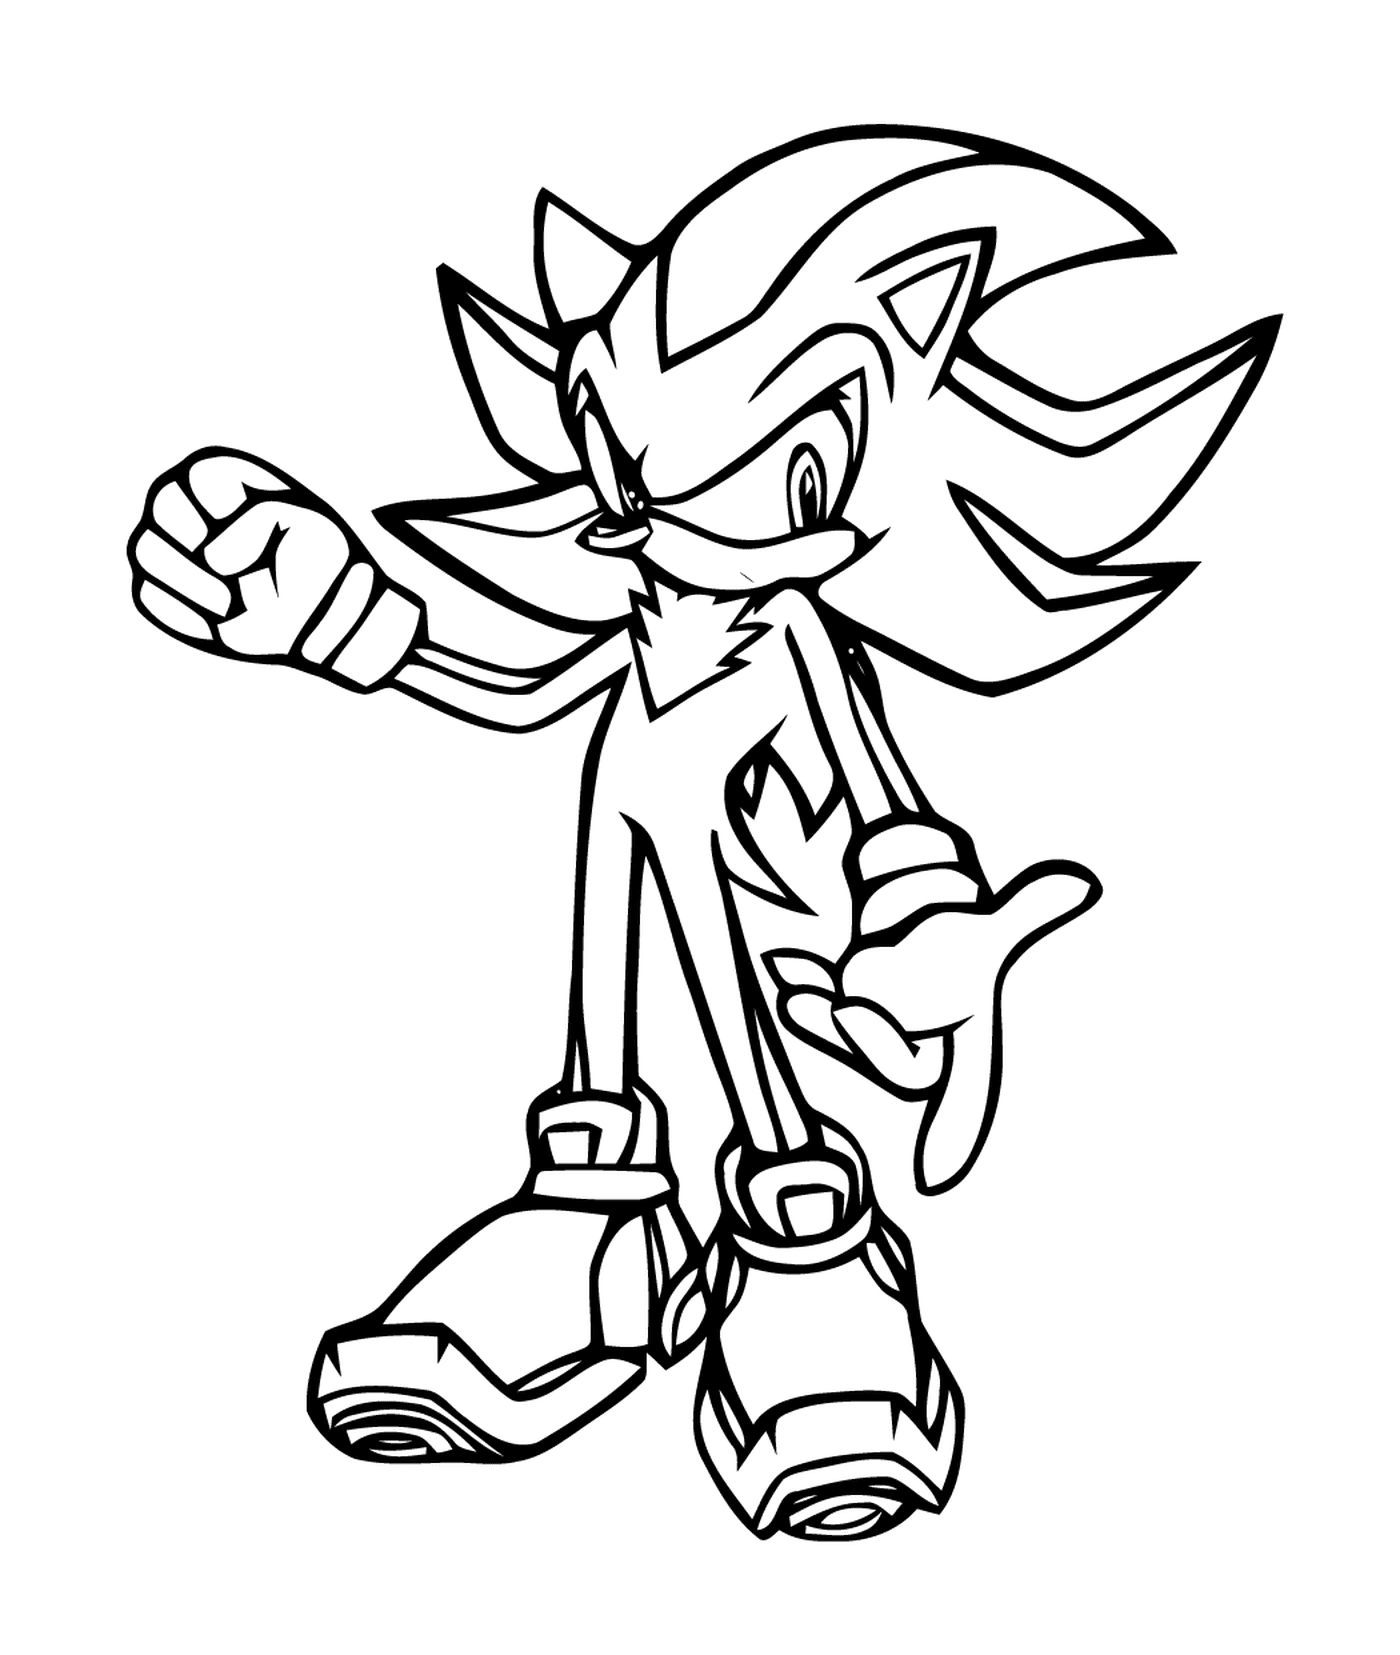  Агильная и быстрая Sonic 